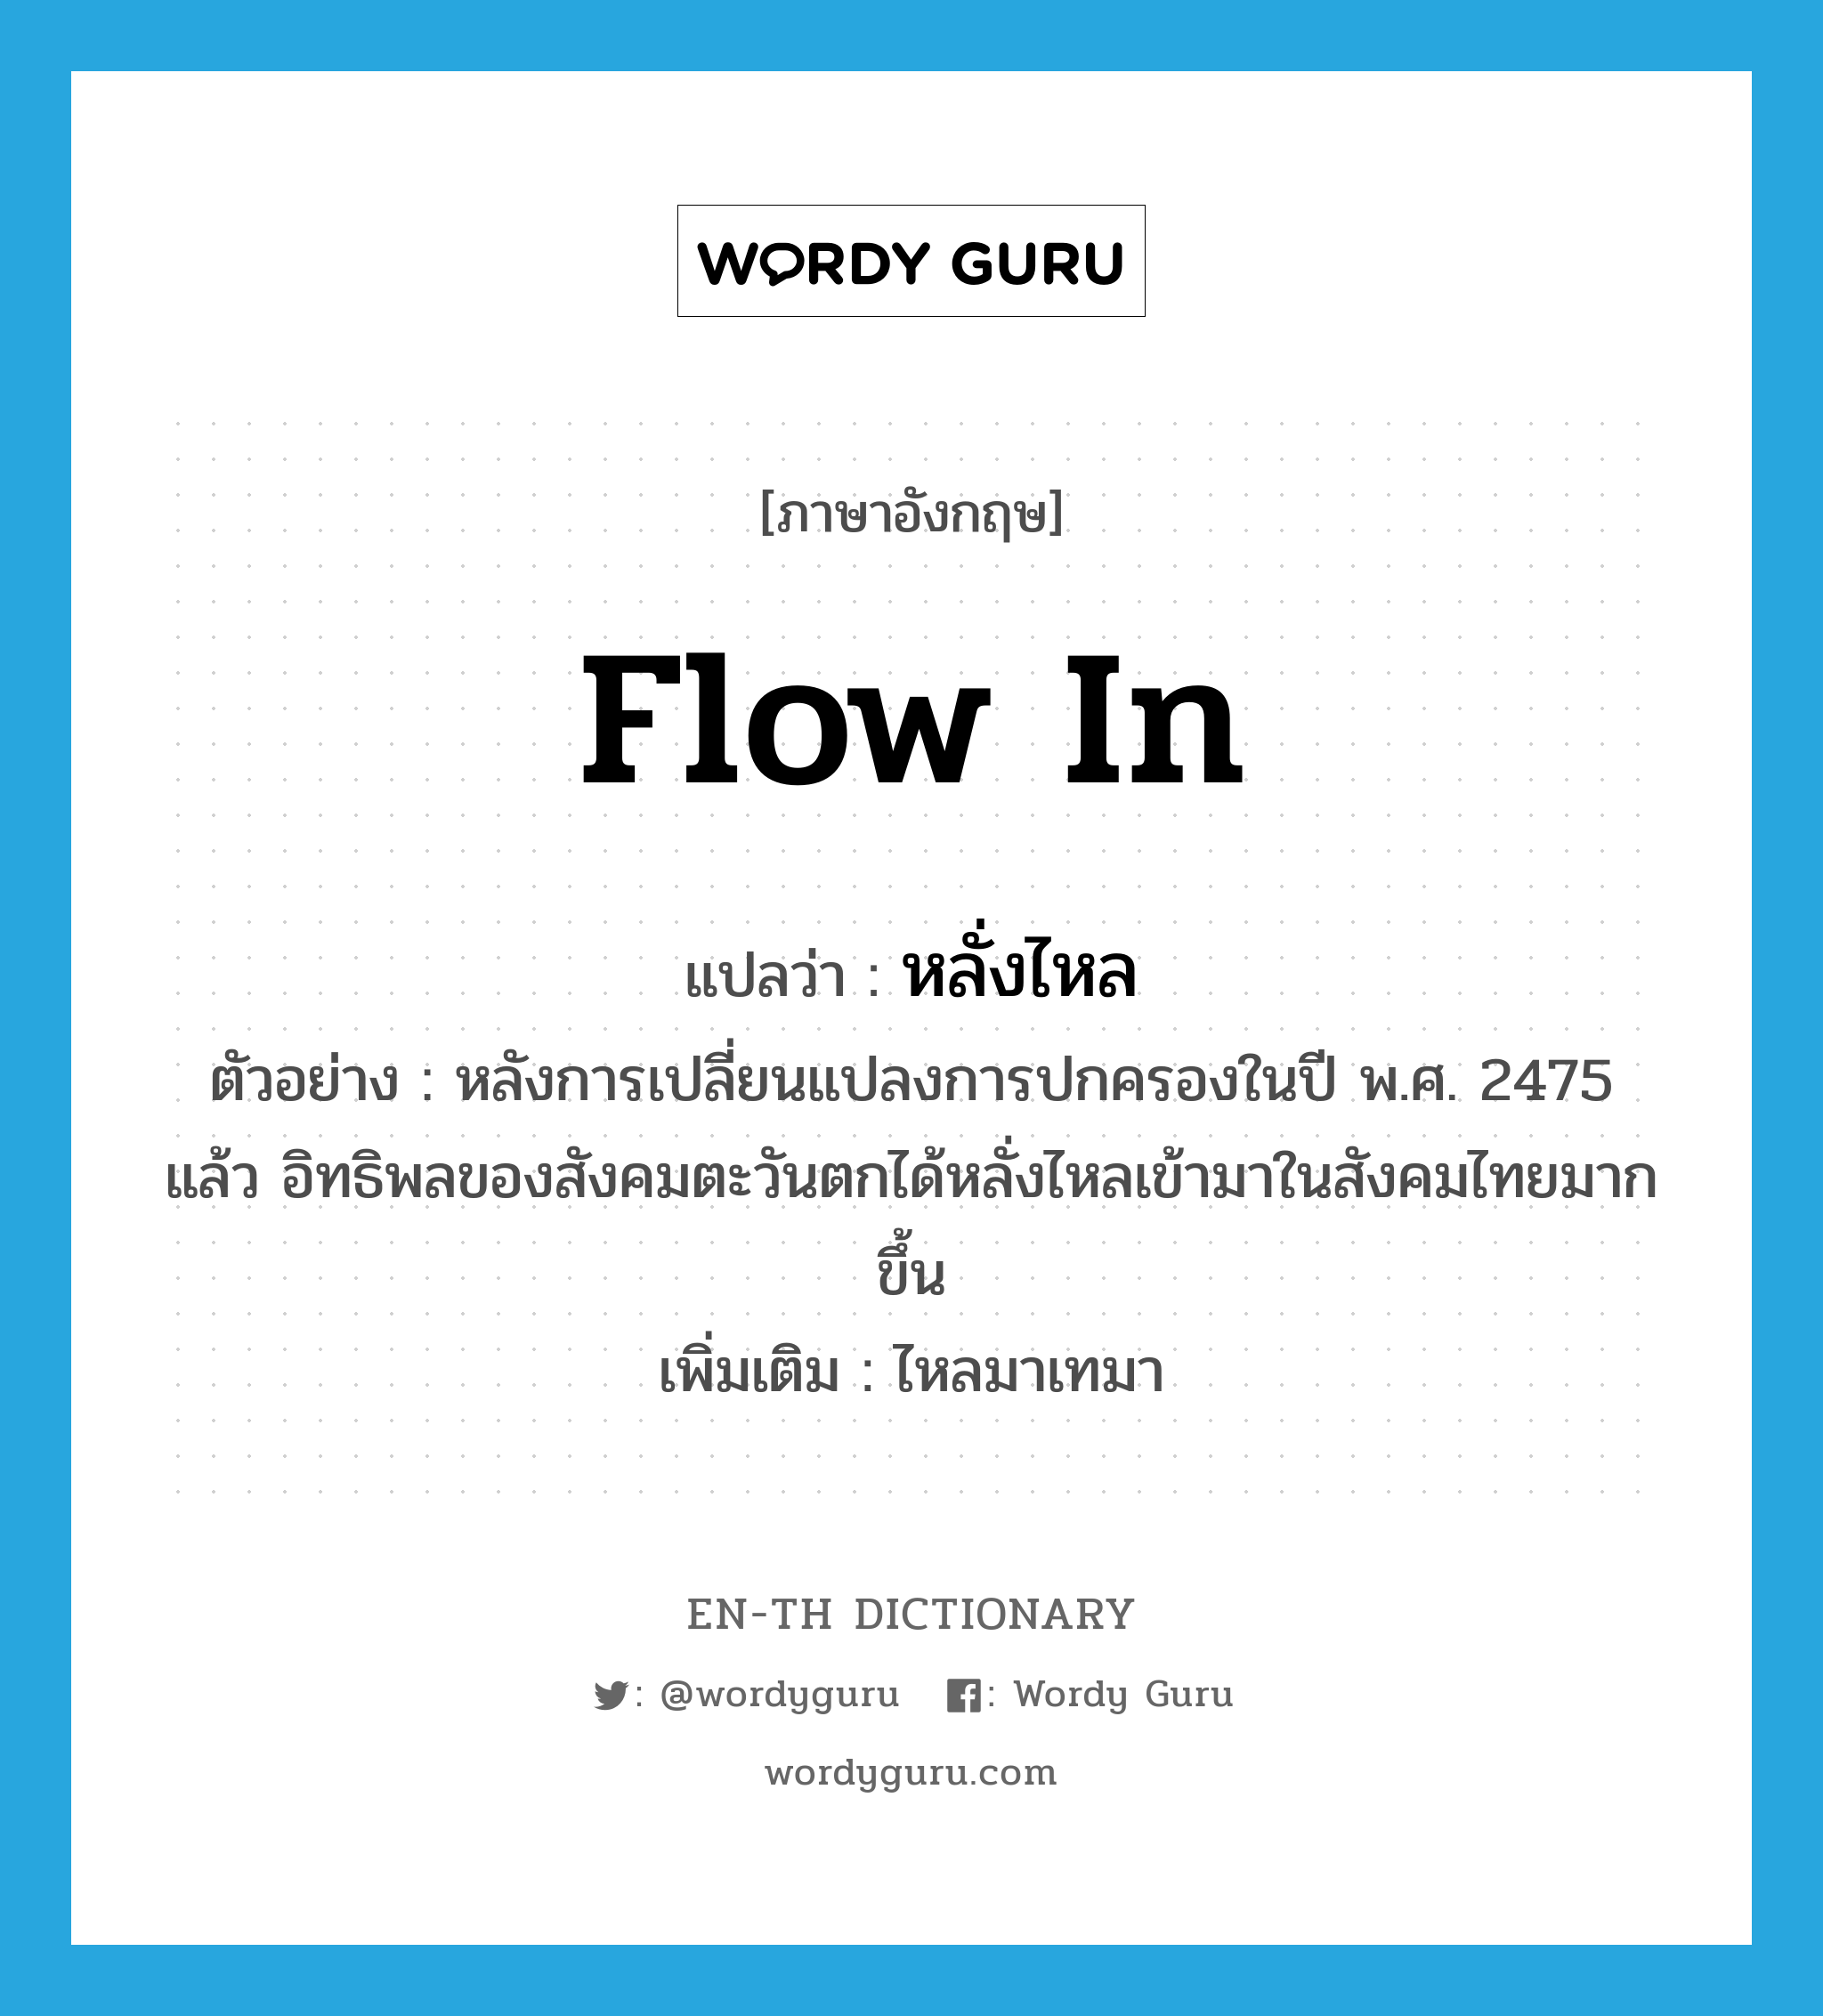 flow in แปลว่า?, คำศัพท์ภาษาอังกฤษ flow in แปลว่า หลั่งไหล ประเภท V ตัวอย่าง หลังการเปลี่ยนแปลงการปกครองในปี พ.ศ. 2475 แล้ว อิทธิพลของสังคมตะวันตกได้หลั่งไหลเข้ามาในสังคมไทยมากขึ้น เพิ่มเติม ไหลมาเทมา หมวด V